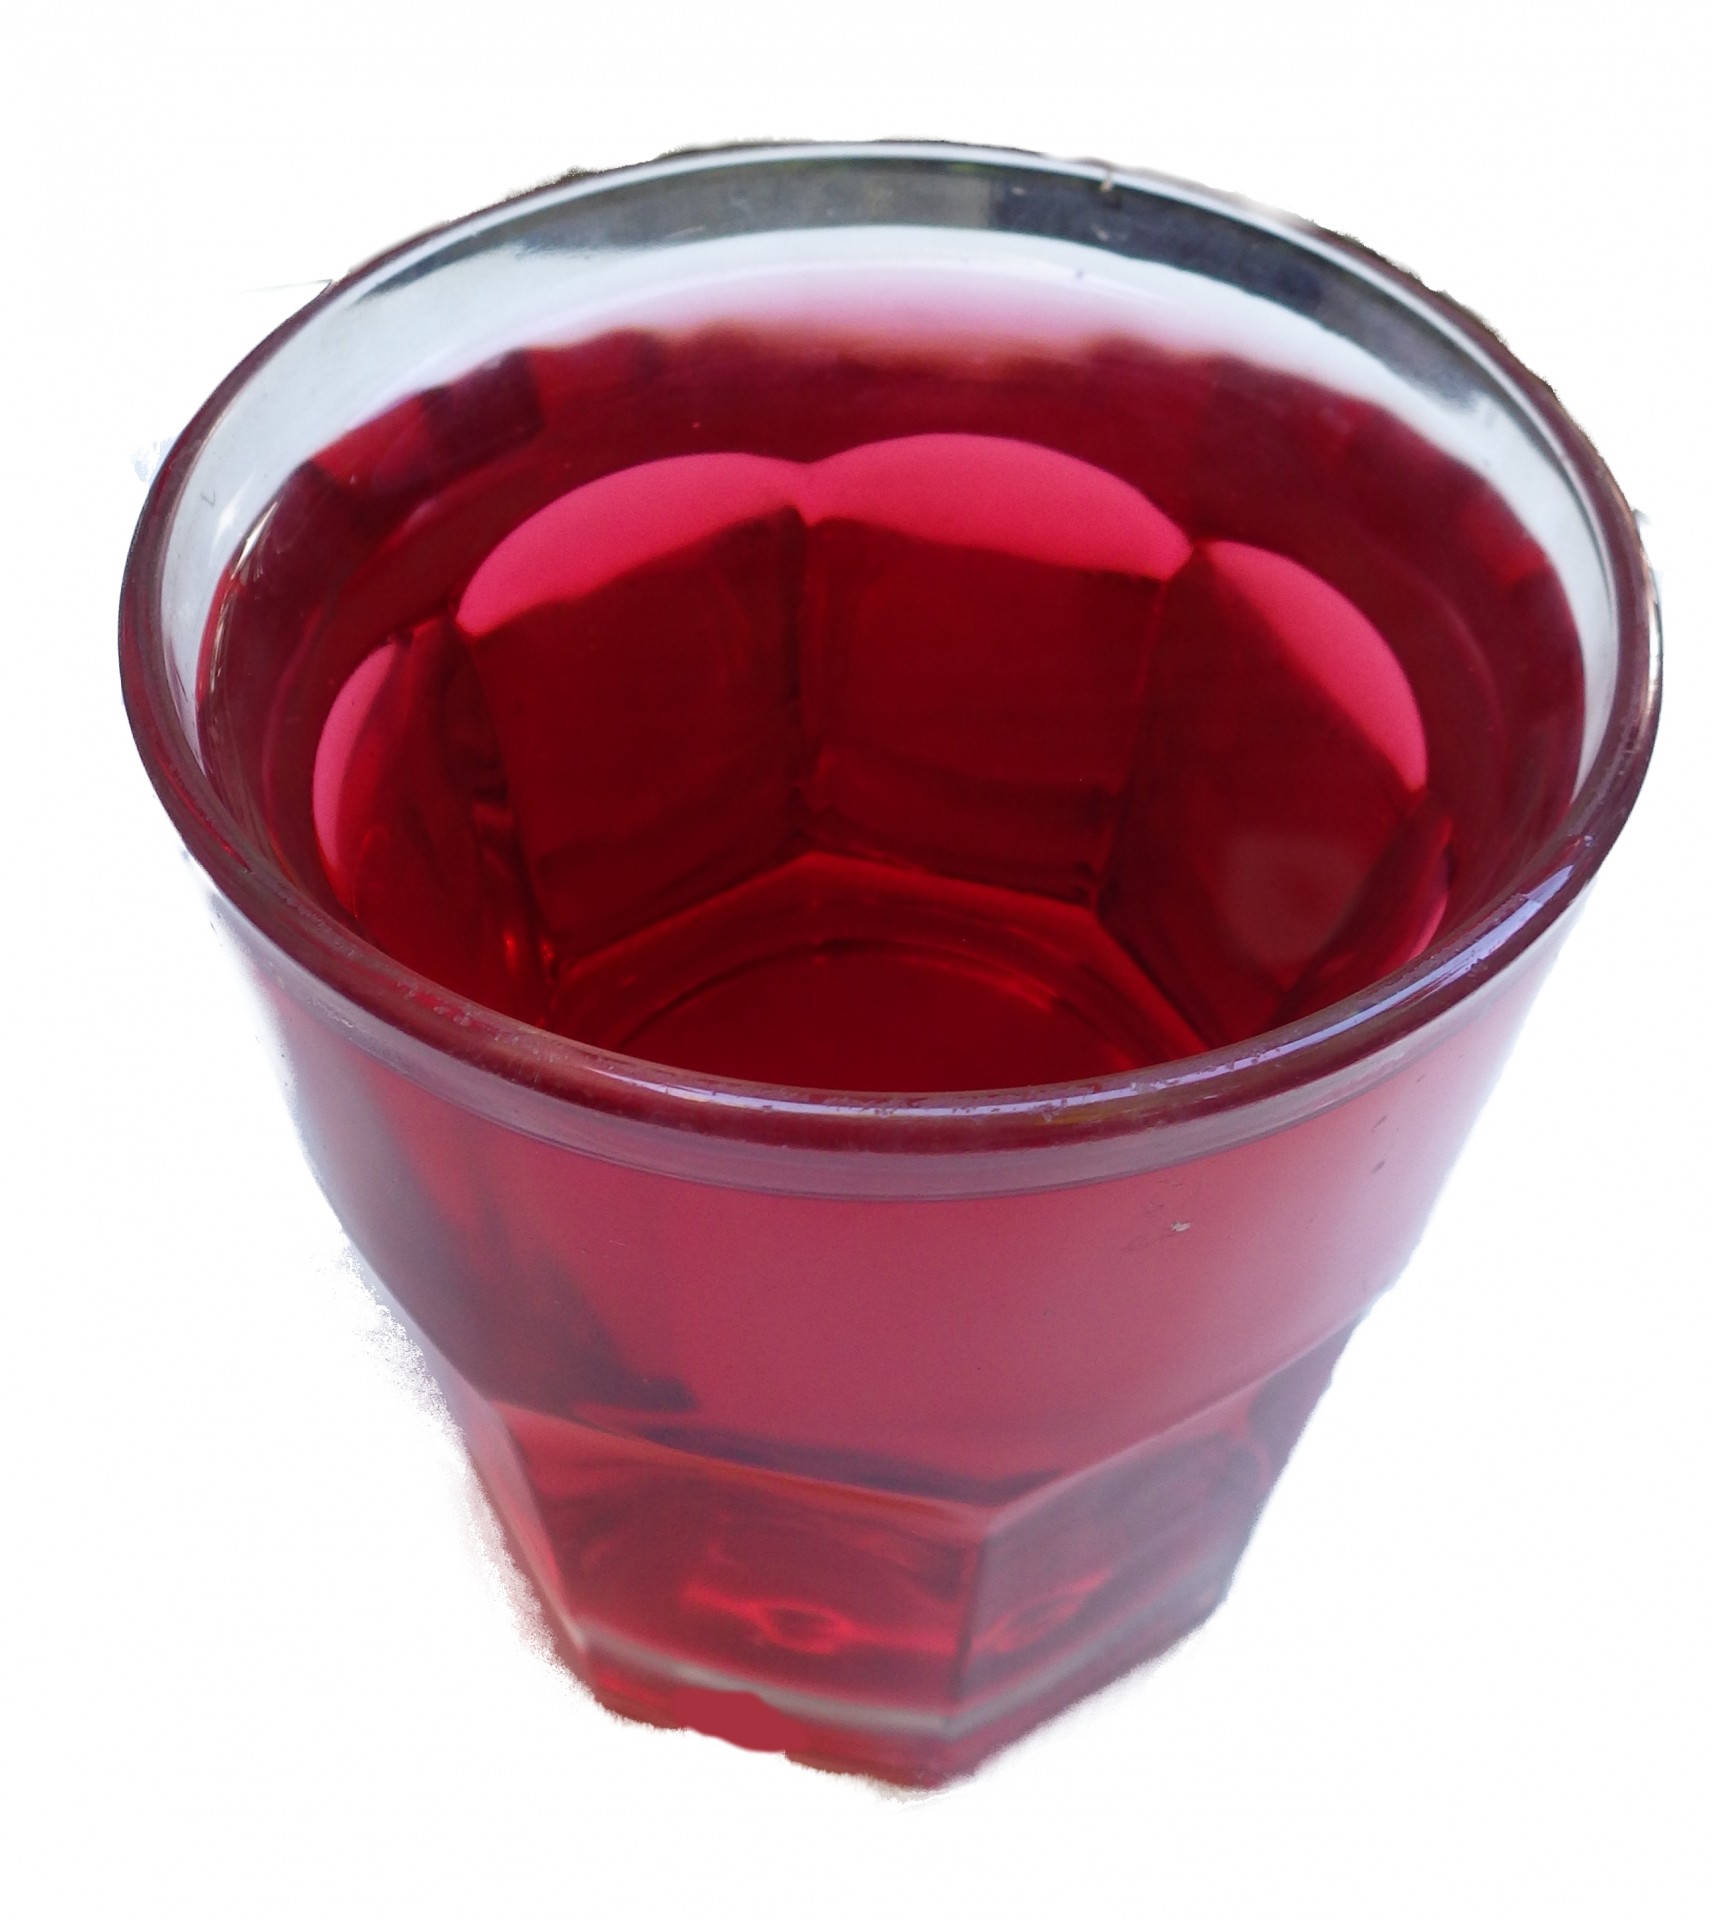 Spiced Cranberry-Apple Juice